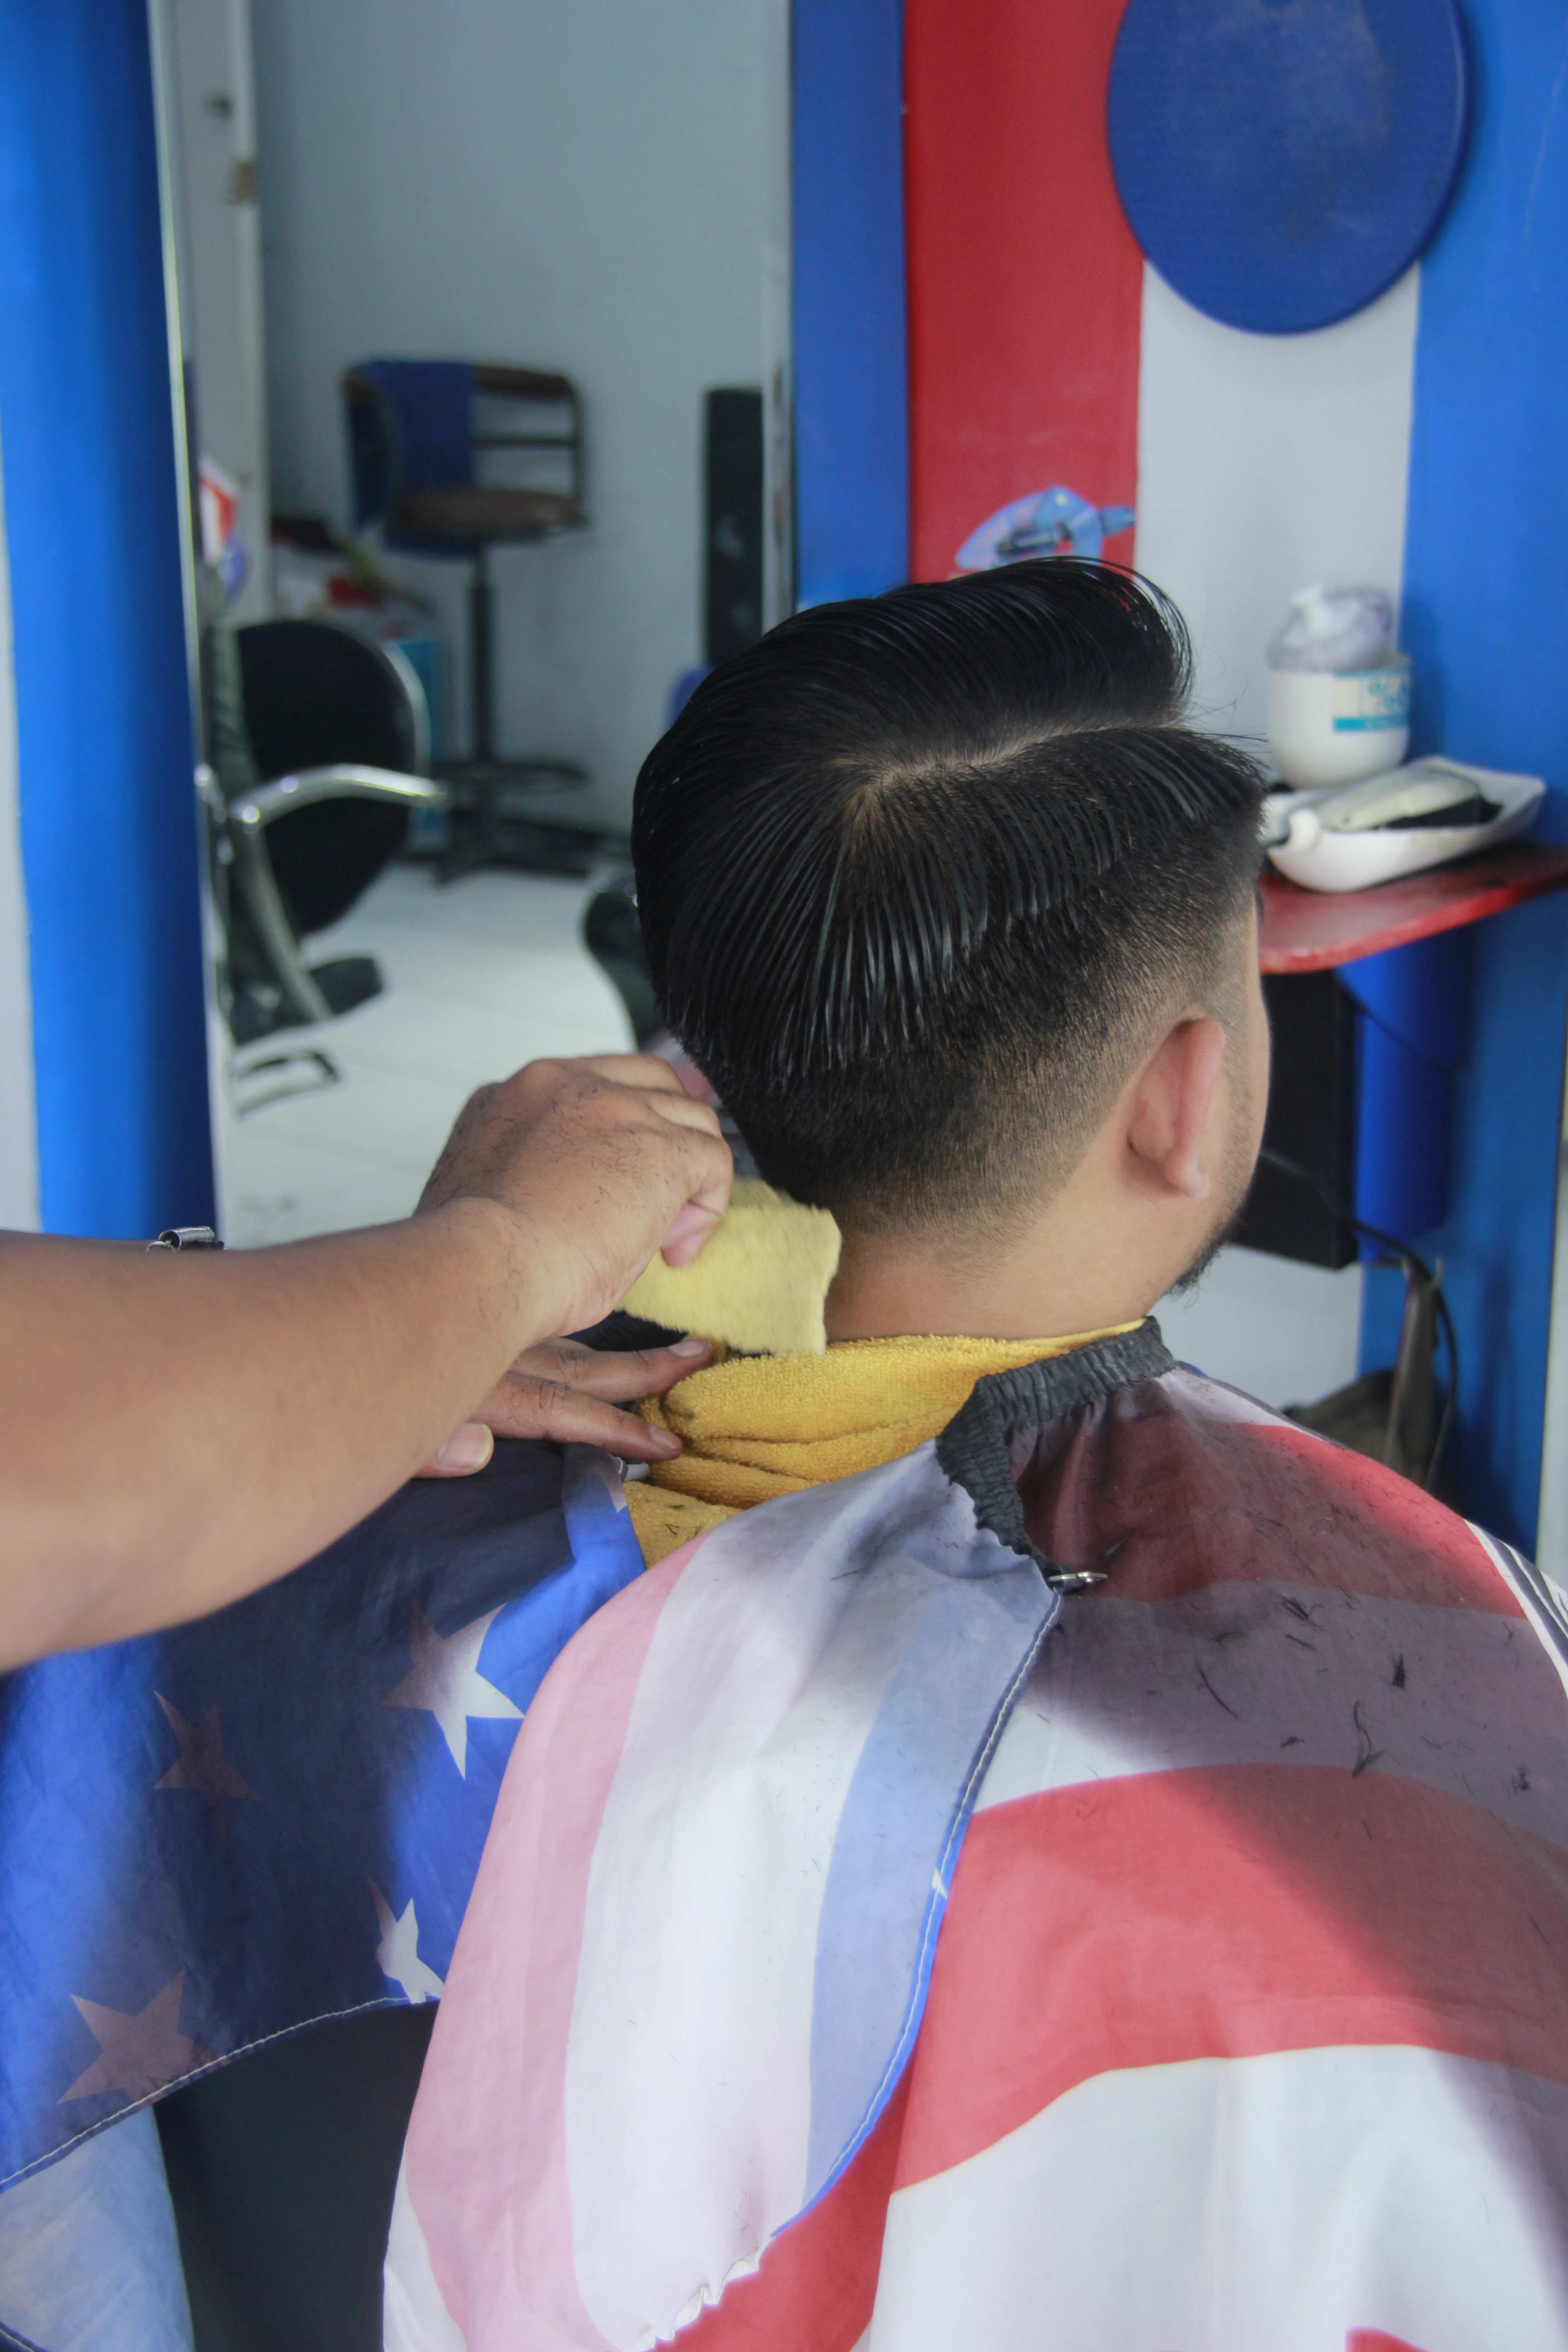 Lokasi Tempat Cukur Rambut Di Kota Malang Keren